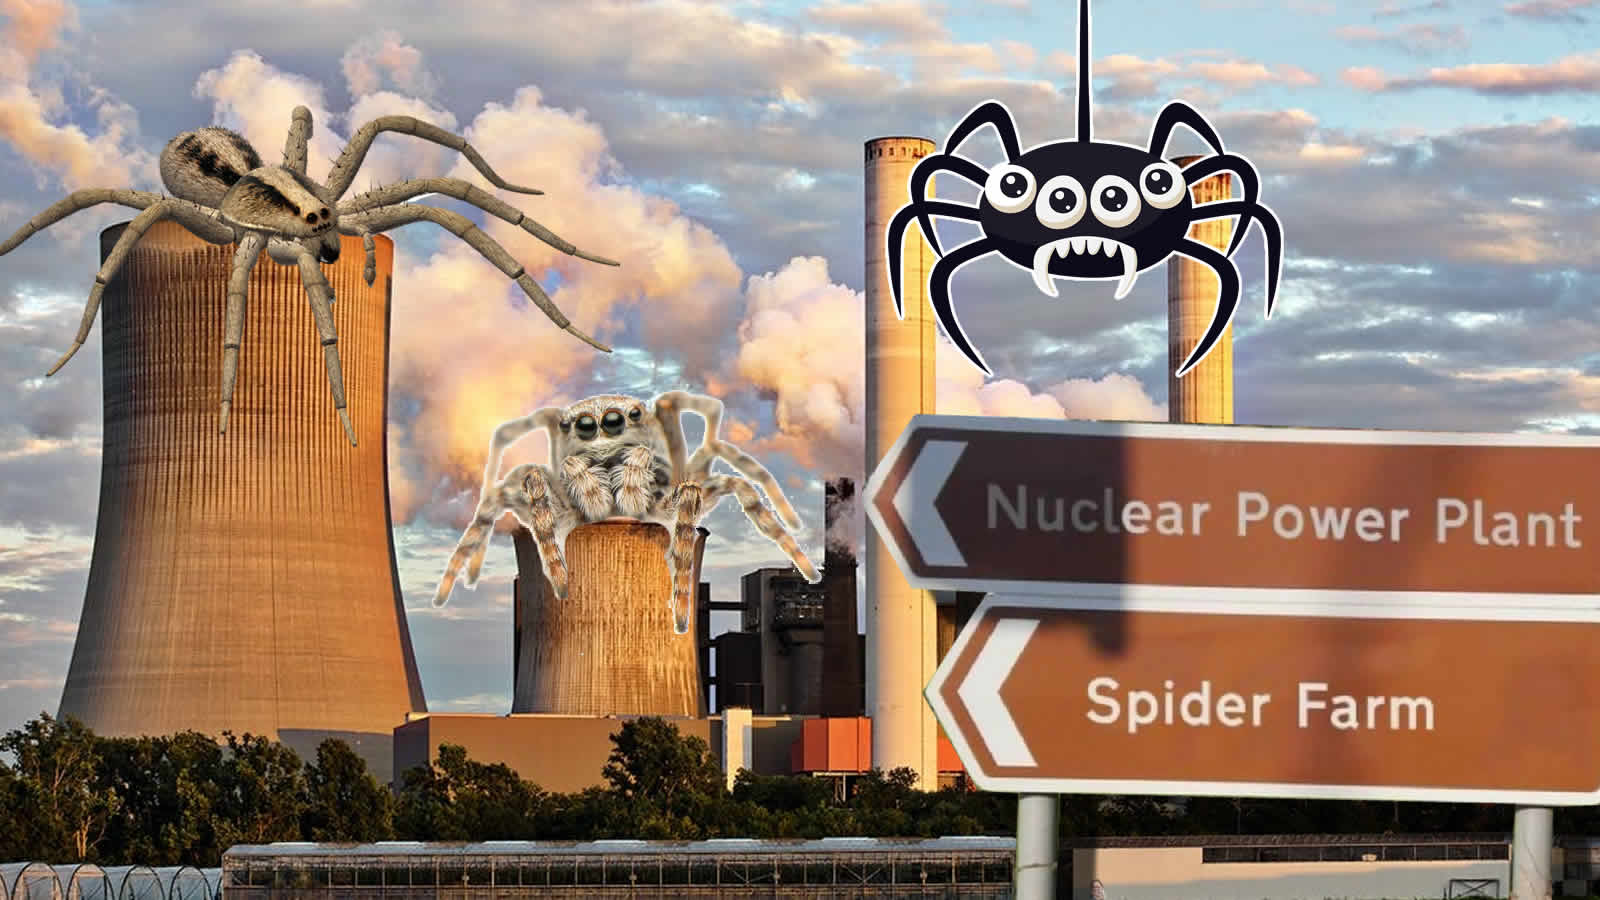 Steht etwa wirklich ein Atomkraftwerk neben einer Spinnenfarm?